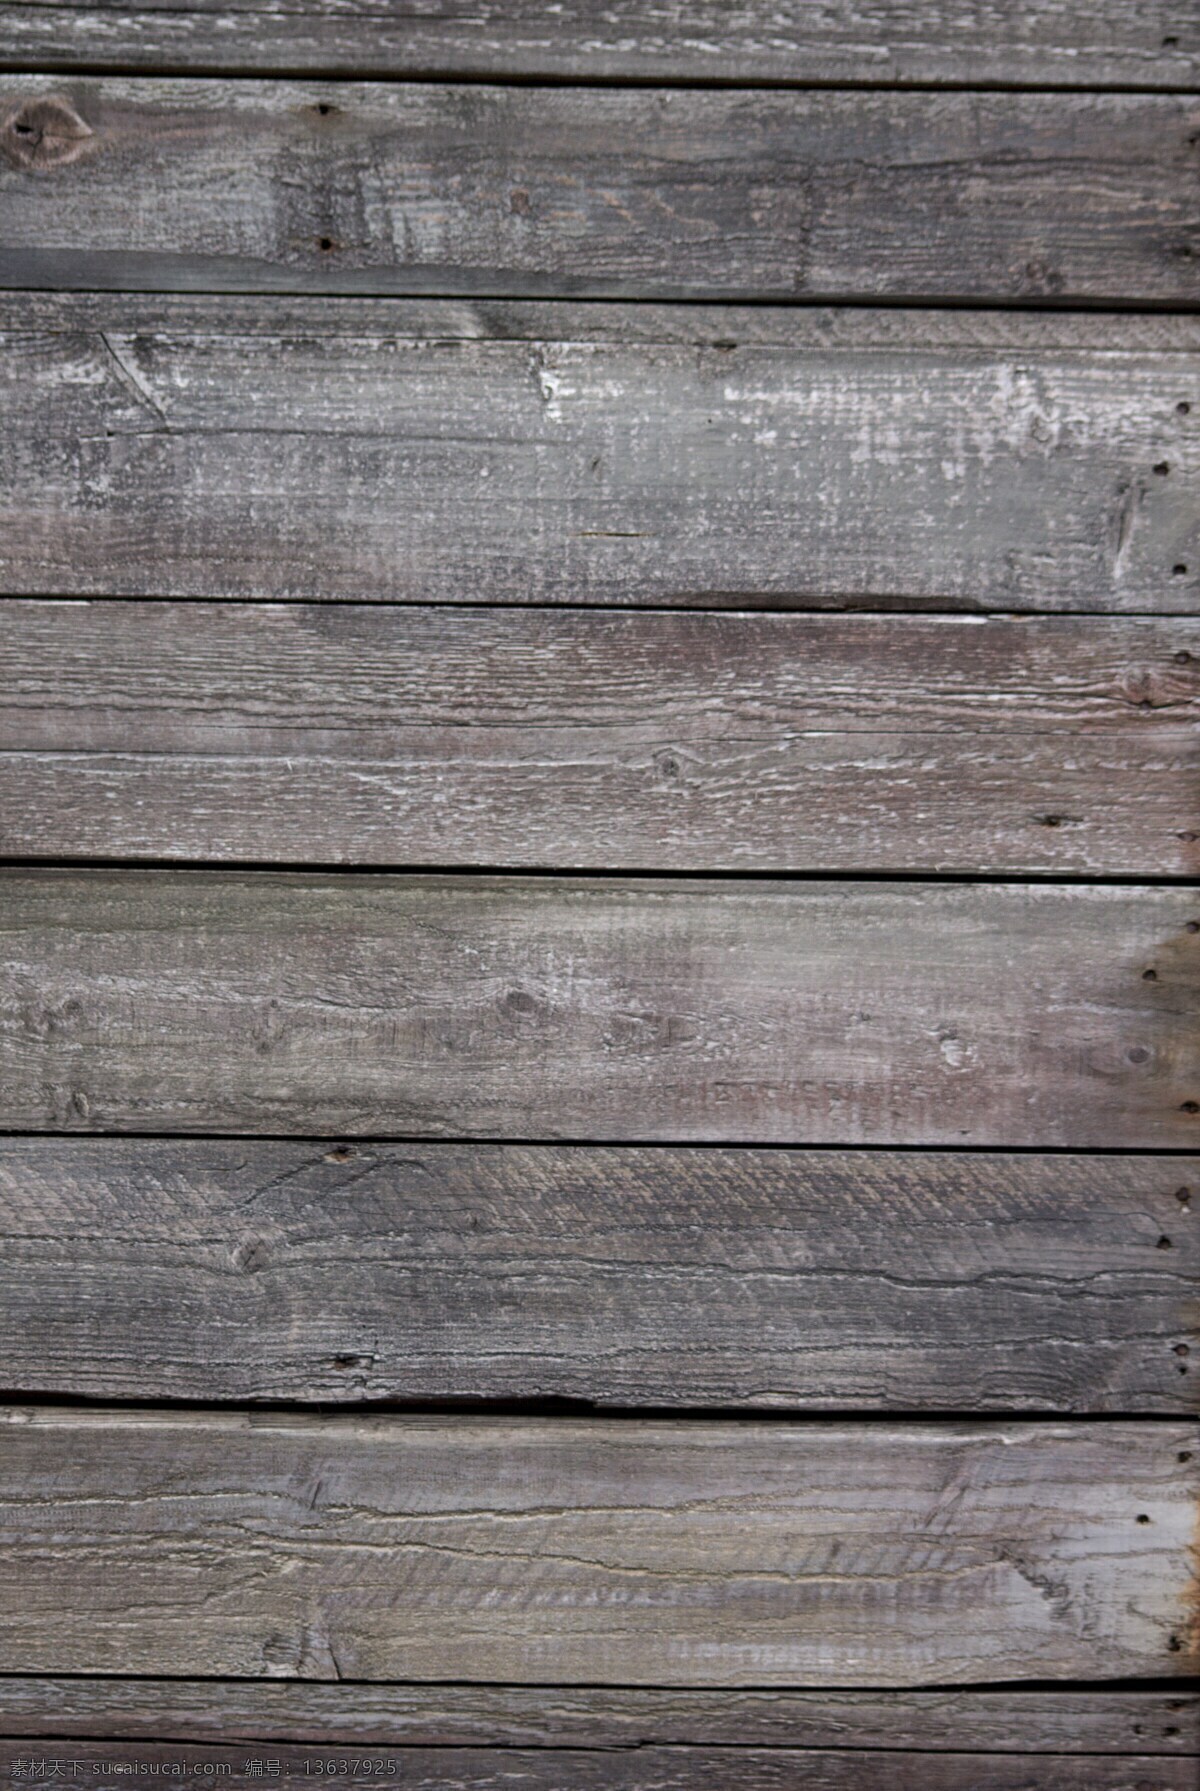 木地板 木材质 木头 木贴图 木饰面 樱桃木 木纹材质 地板 防腐木 地板材质 地板贴图 老木头 生活素材 生活百科 材质 纹理 系列 建筑园林